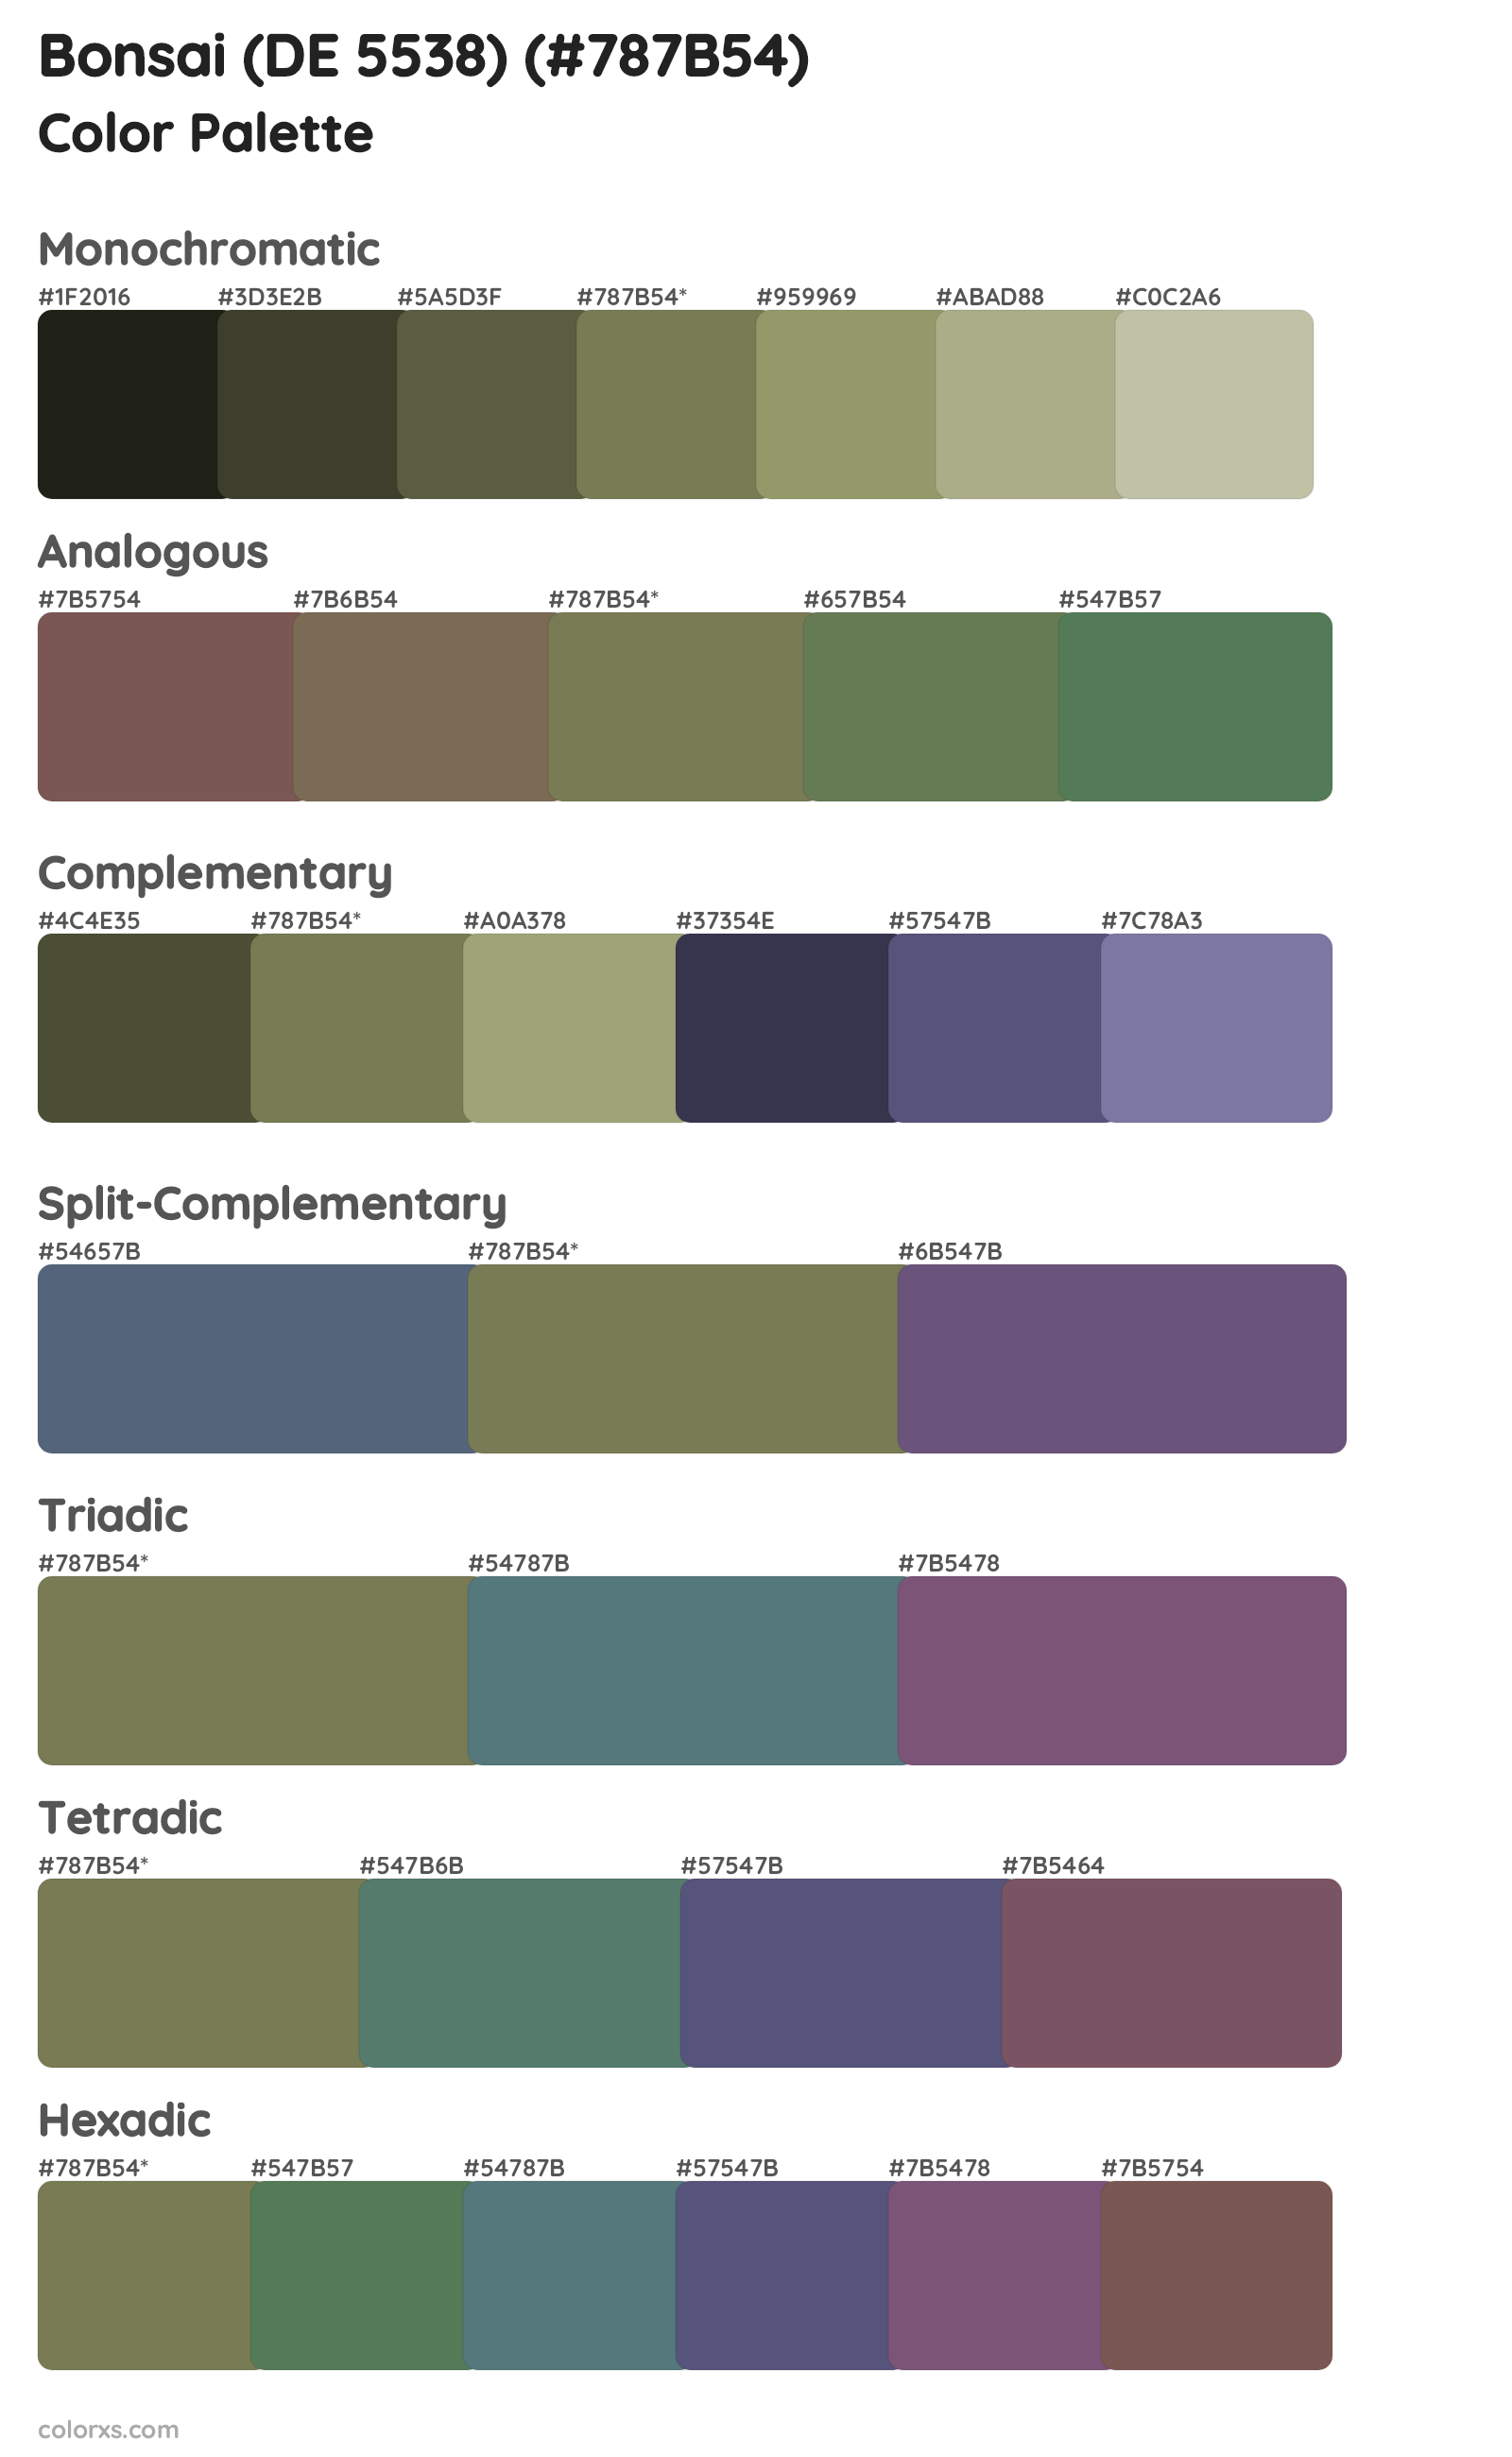 Bonsai (DE 5538) Color Scheme Palettes